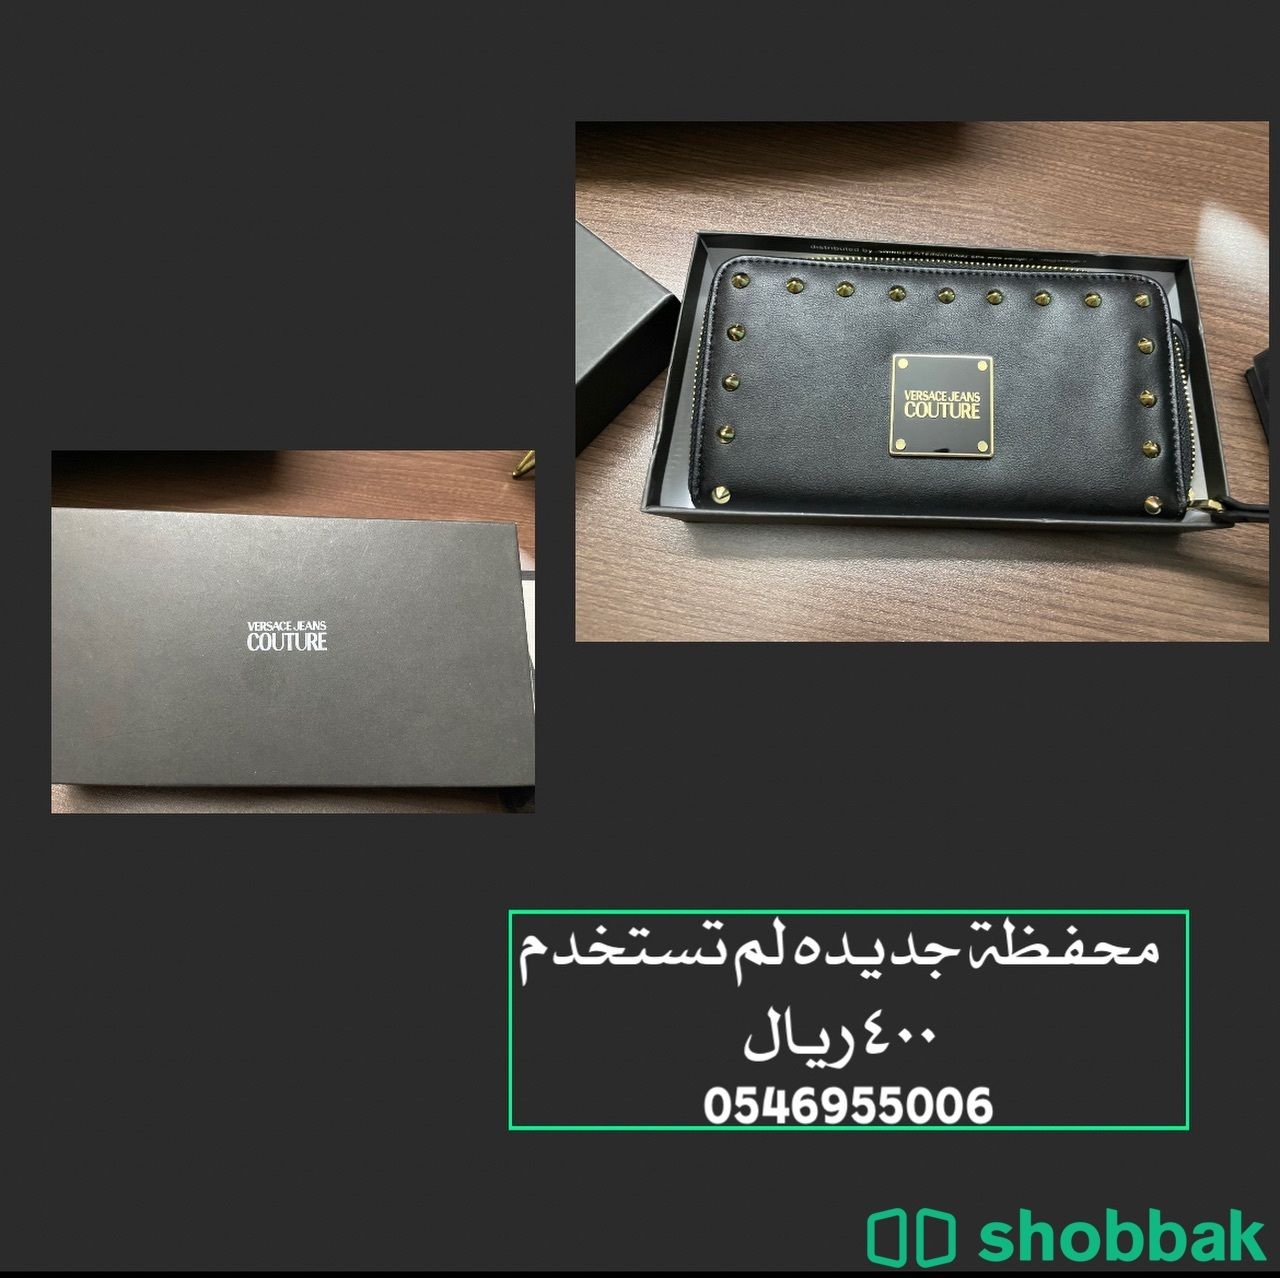 محفظة فيرزاتشي Shobbak Saudi Arabia